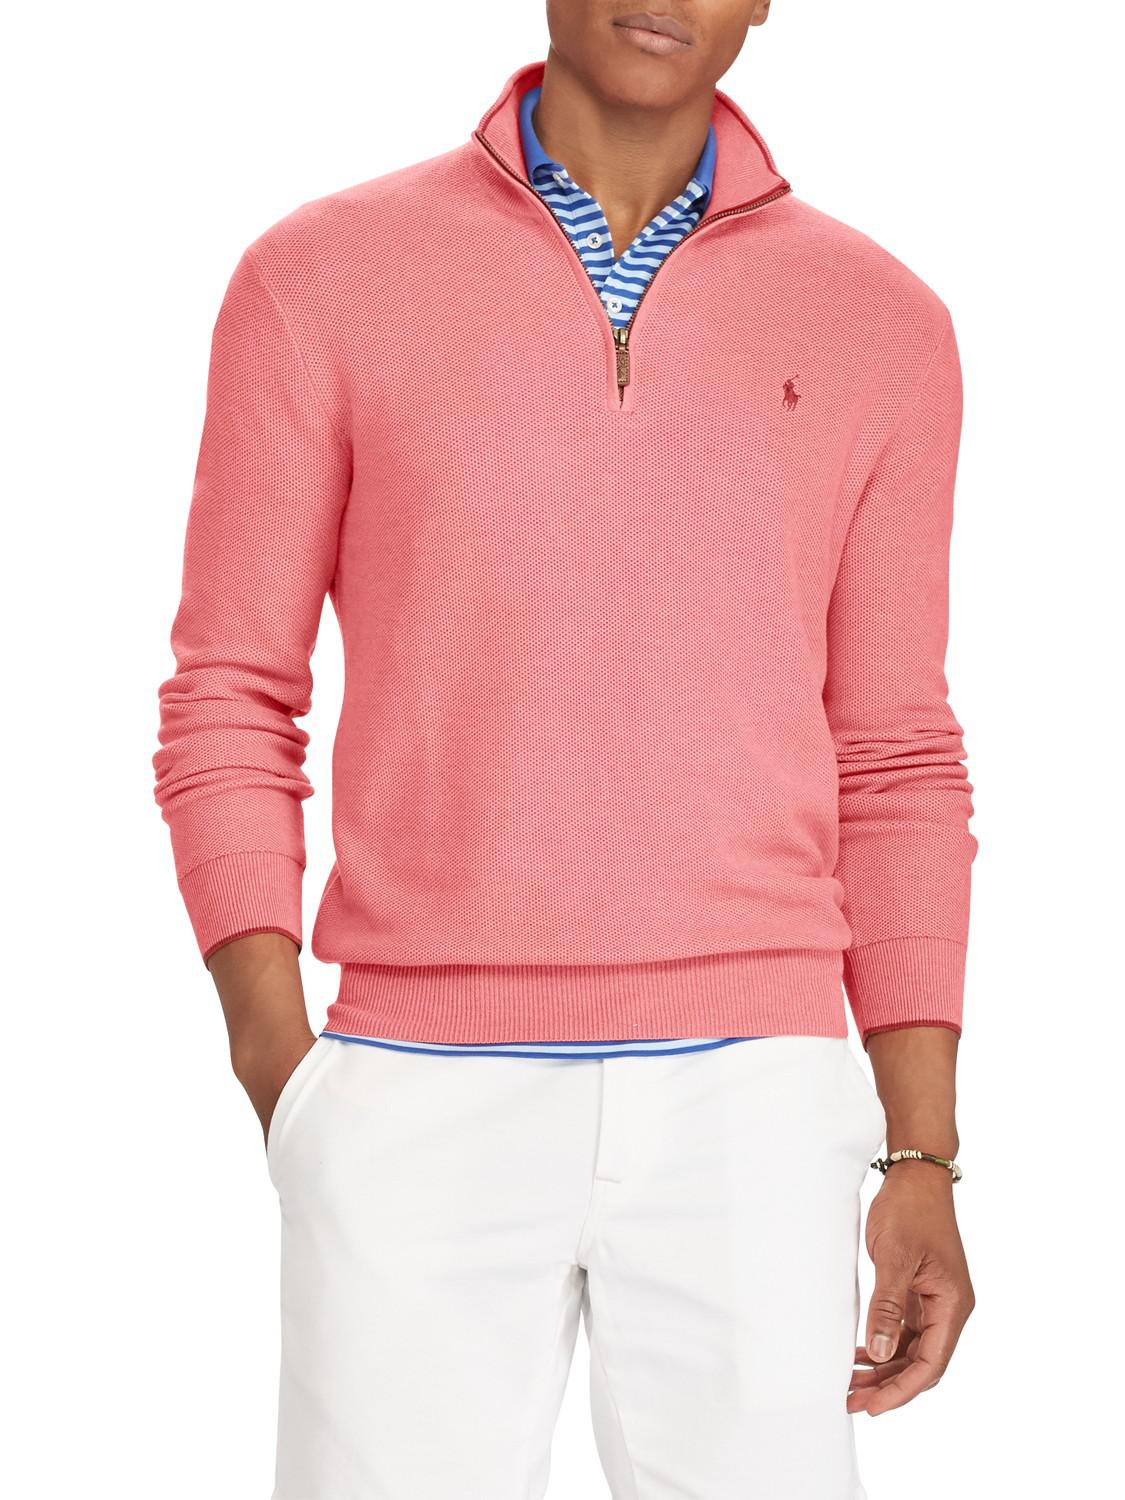 Ralph Lauren Cotton Polo Half Zip Jumper in Salmon (Pink) for Men - Lyst